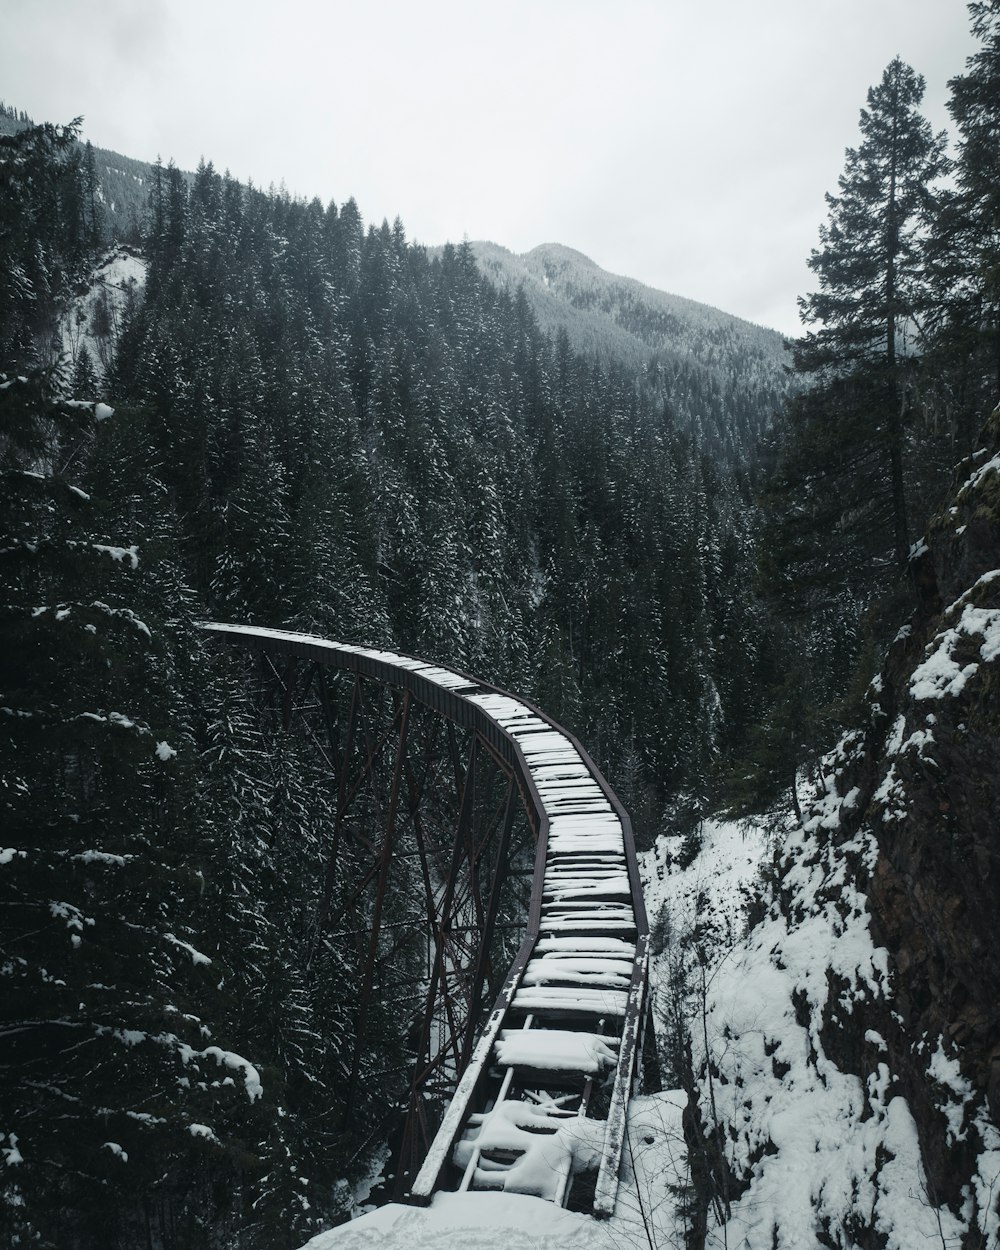 Ein Zug, der über eine schneebedeckte Brücke fährt